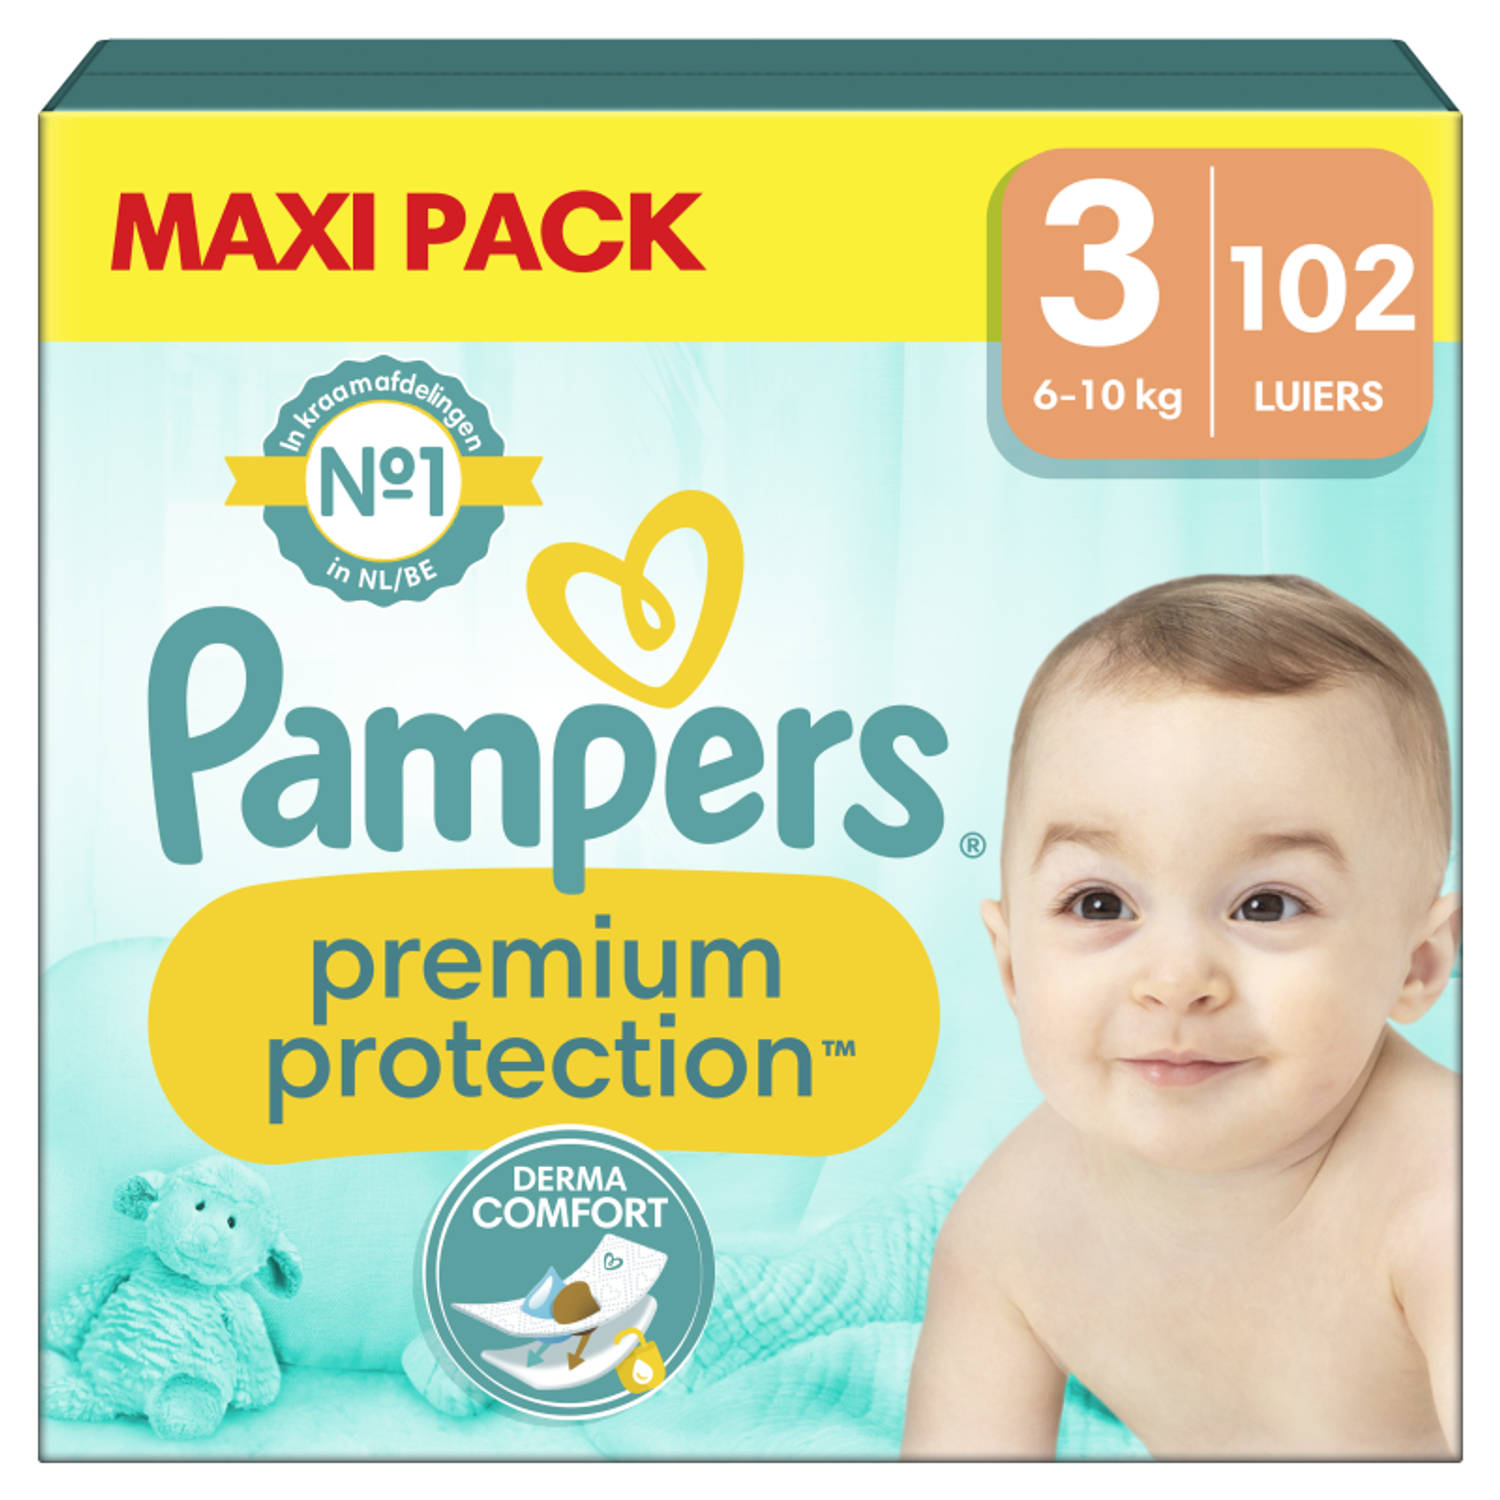 Pampers - Premium Protection - Maat 3 - Megapack - 102 luiers